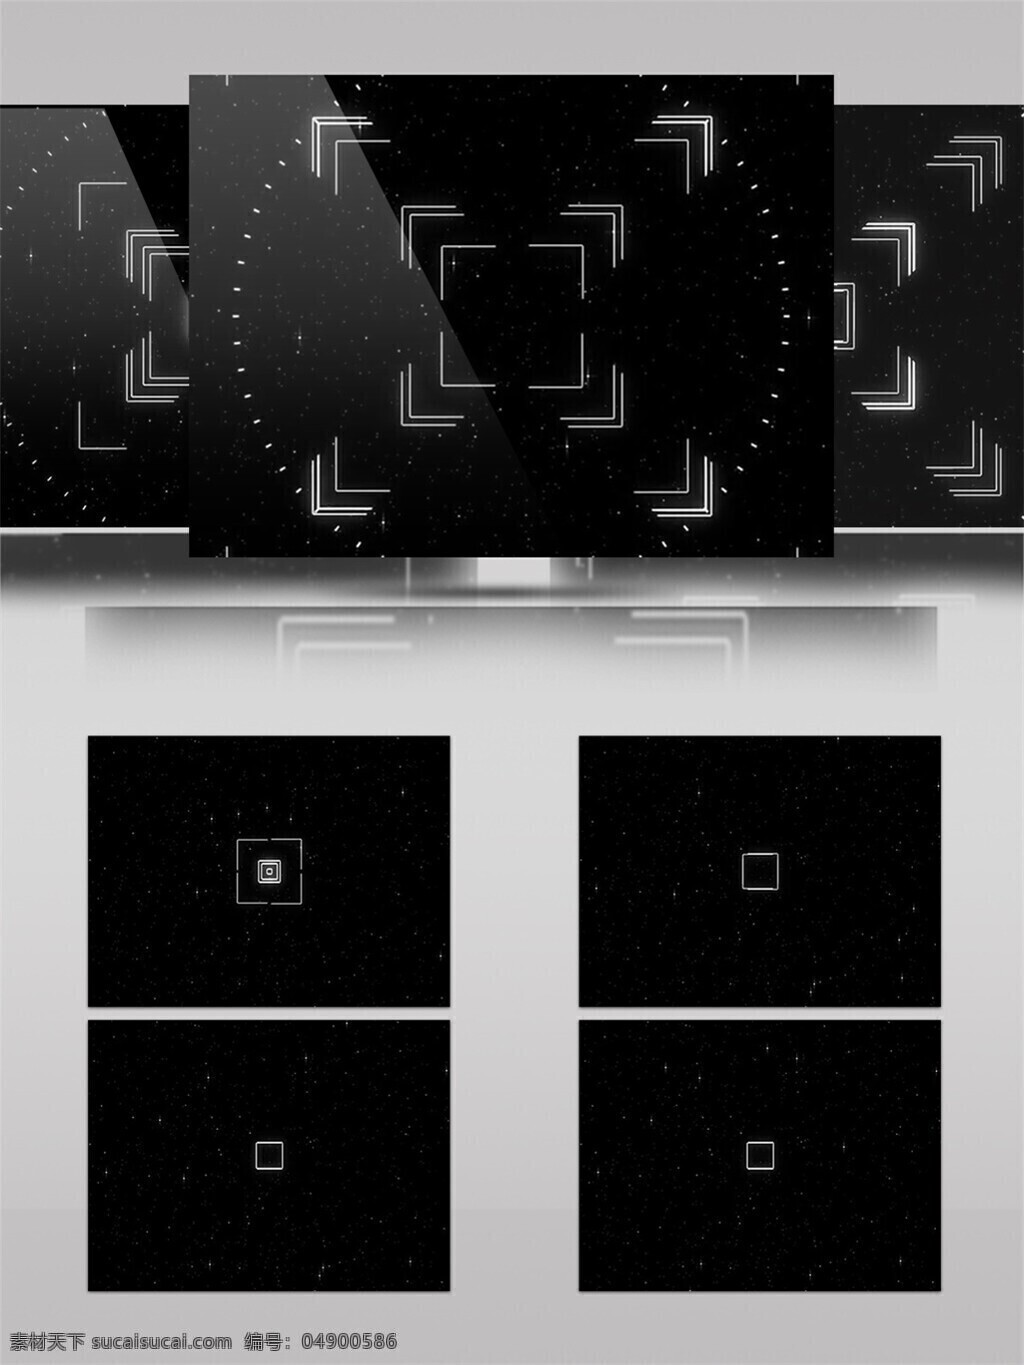 黑白 相机 方块 视频 黑色 激光 视觉享受 手机壁纸 白色 光斑散射